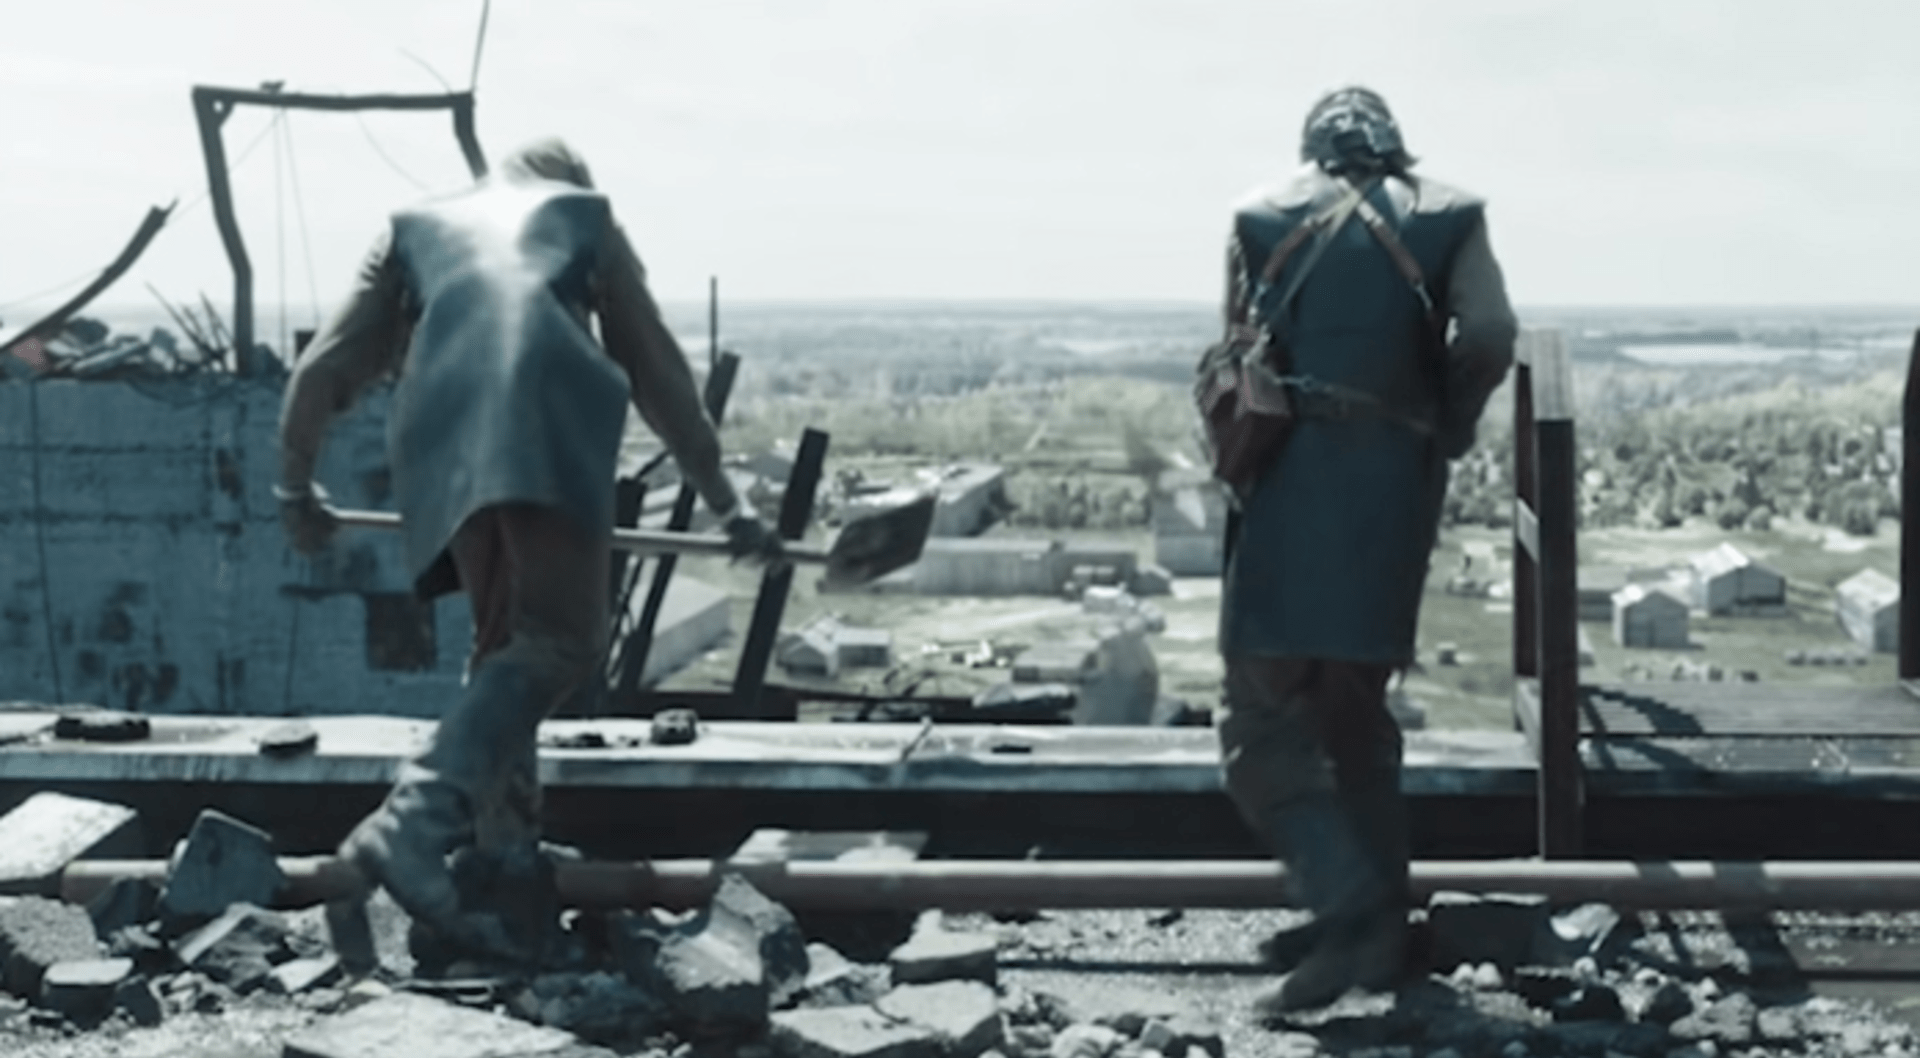 Video srovnávající seriál Černobyl s realitou